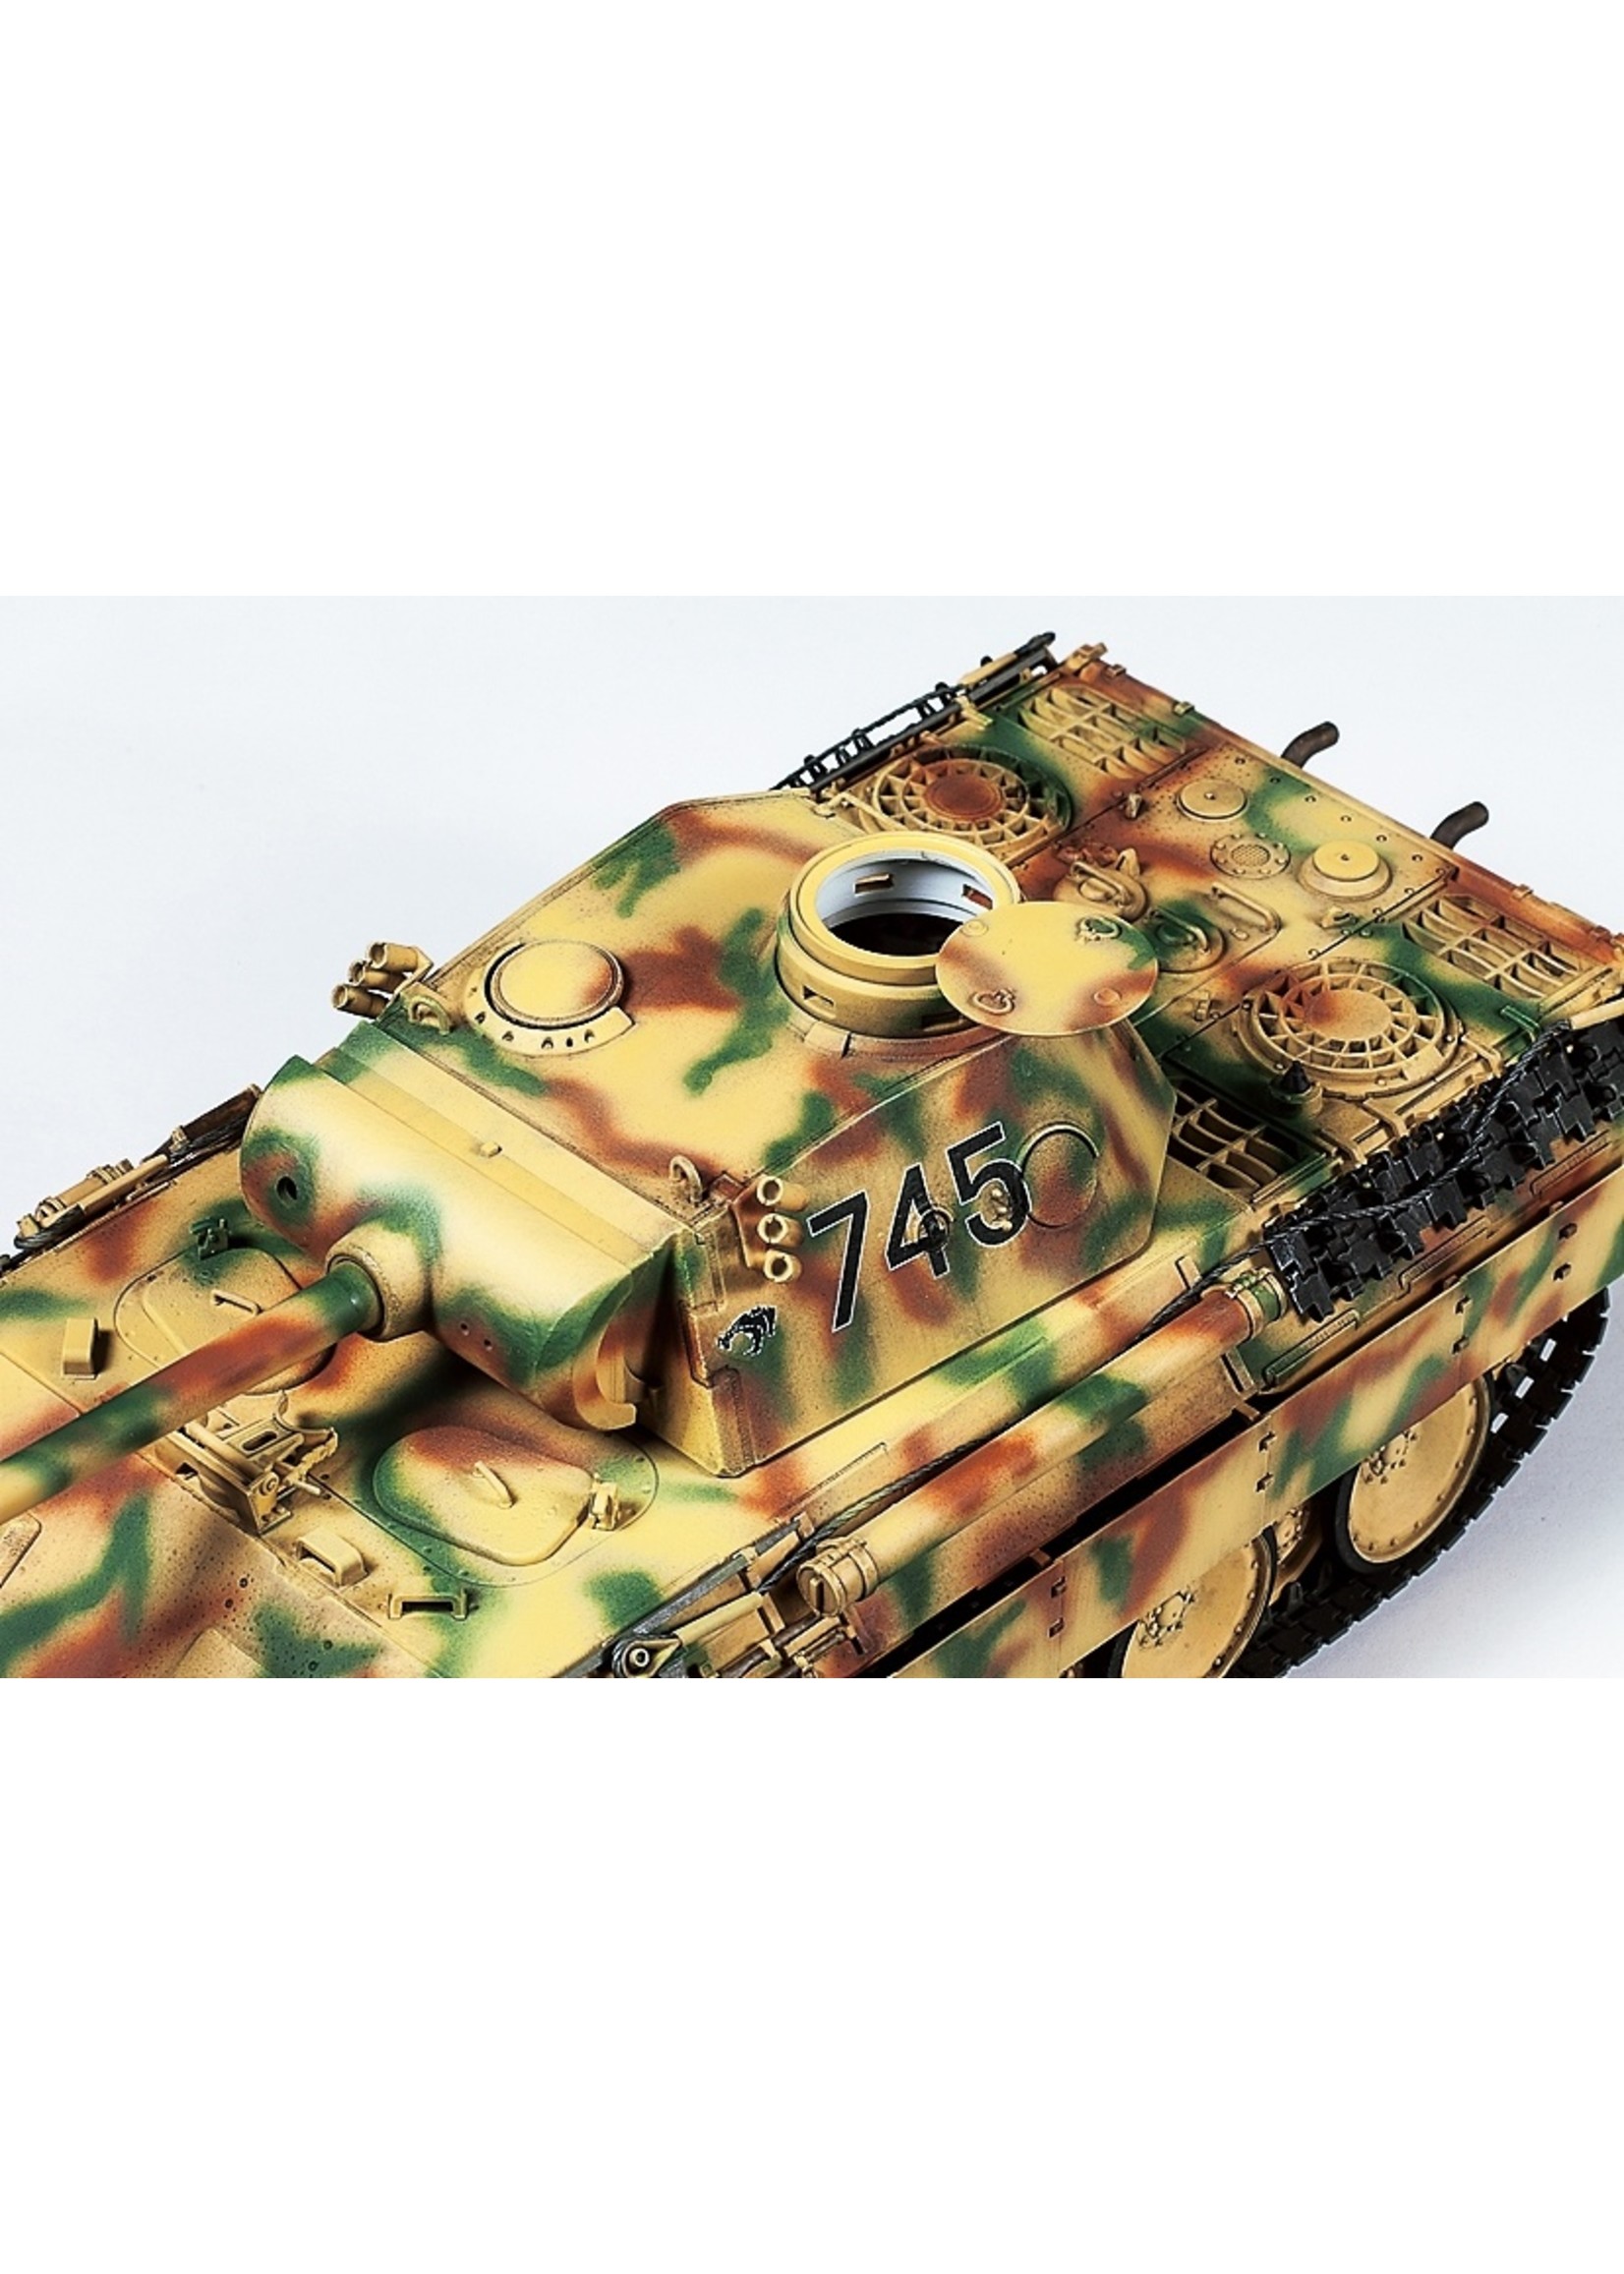 Tamiya 35345 - 1/35 German Panther AUSF.D Tank